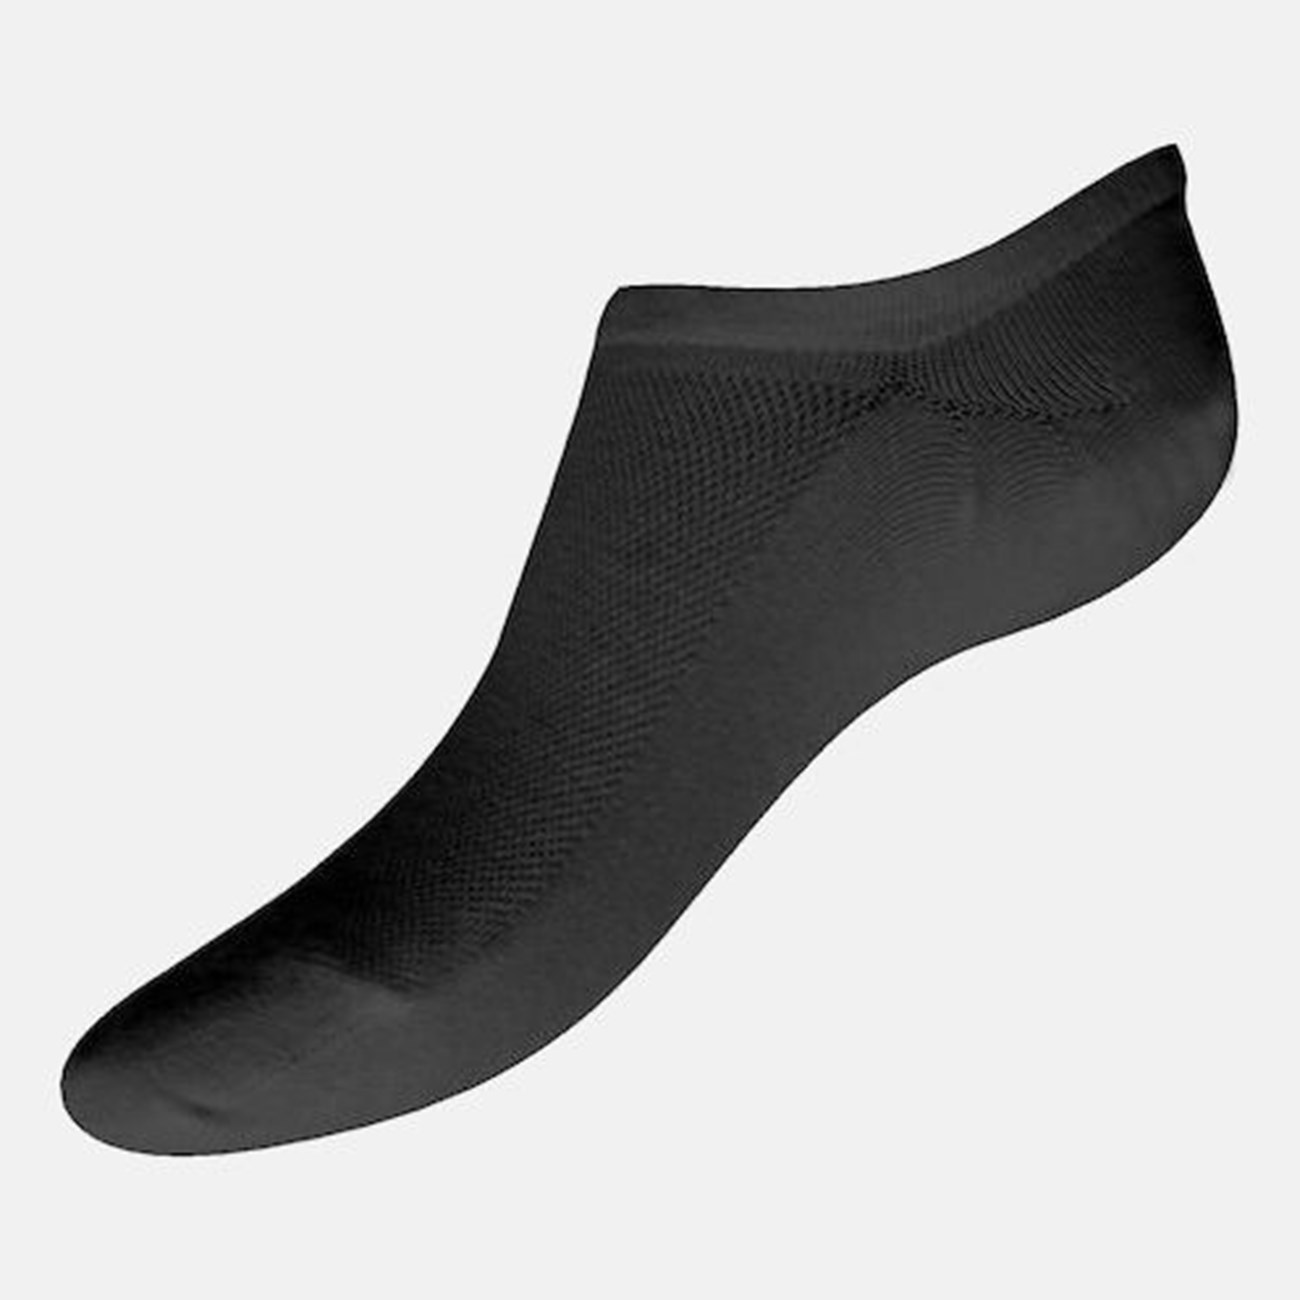  Γυναικείες Κάλτσες Sosoni Bamboo W335-02 - The Athlete's Foot